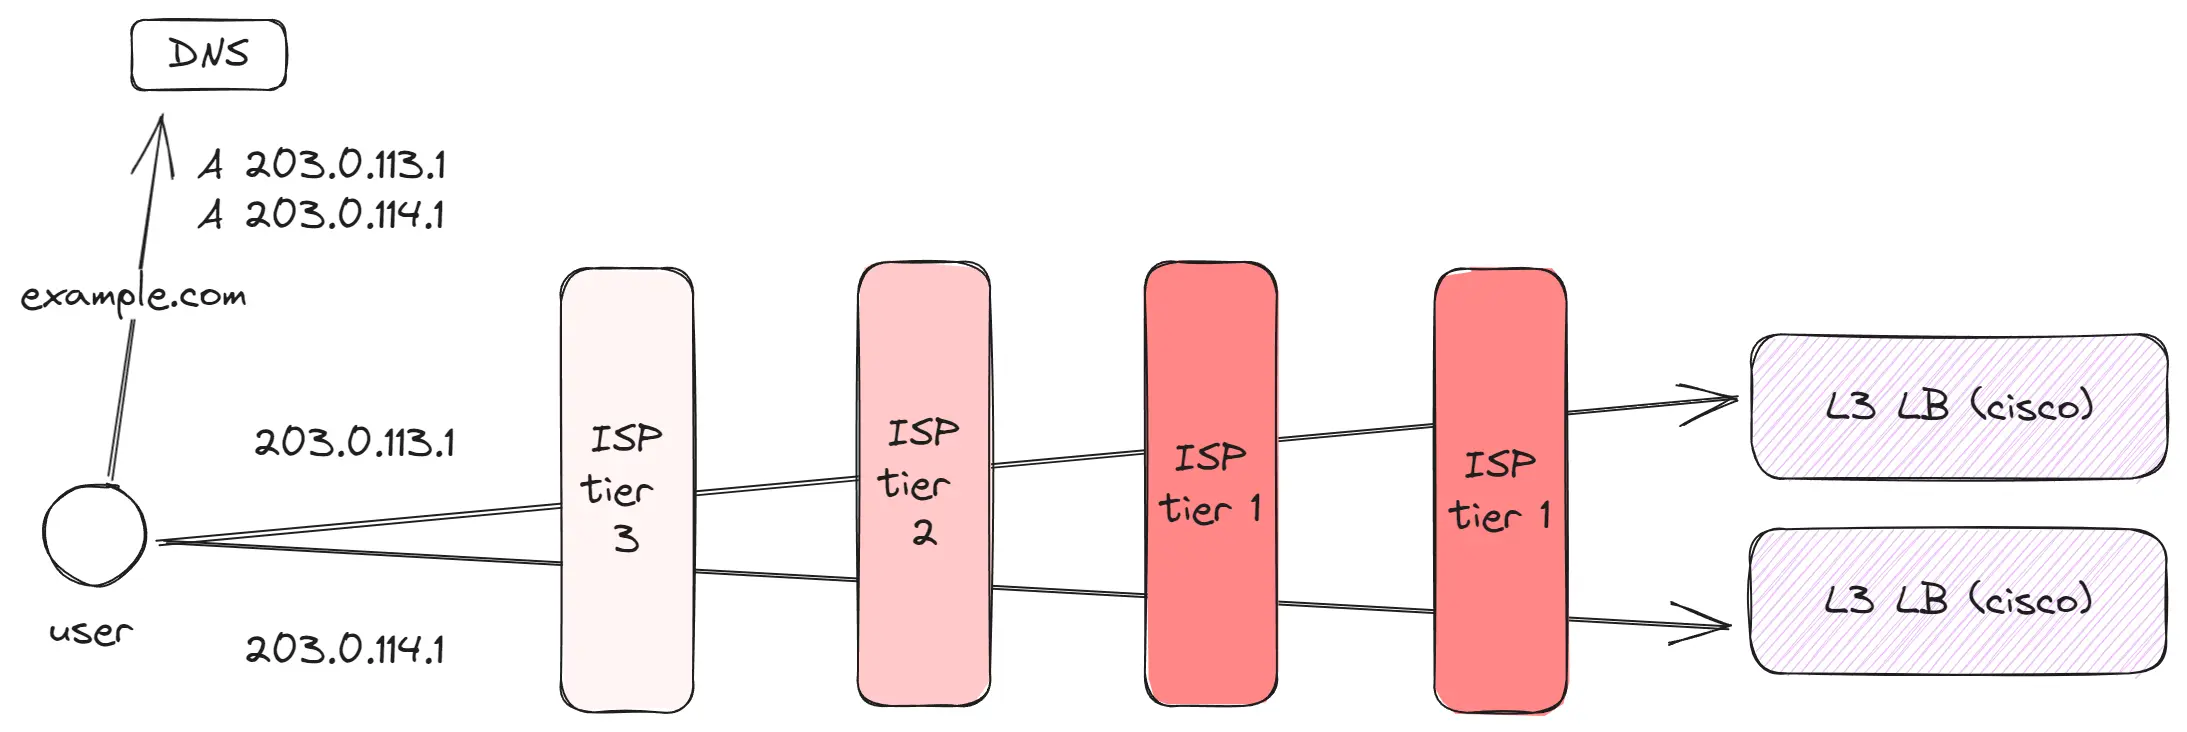 ISP tier 1 network